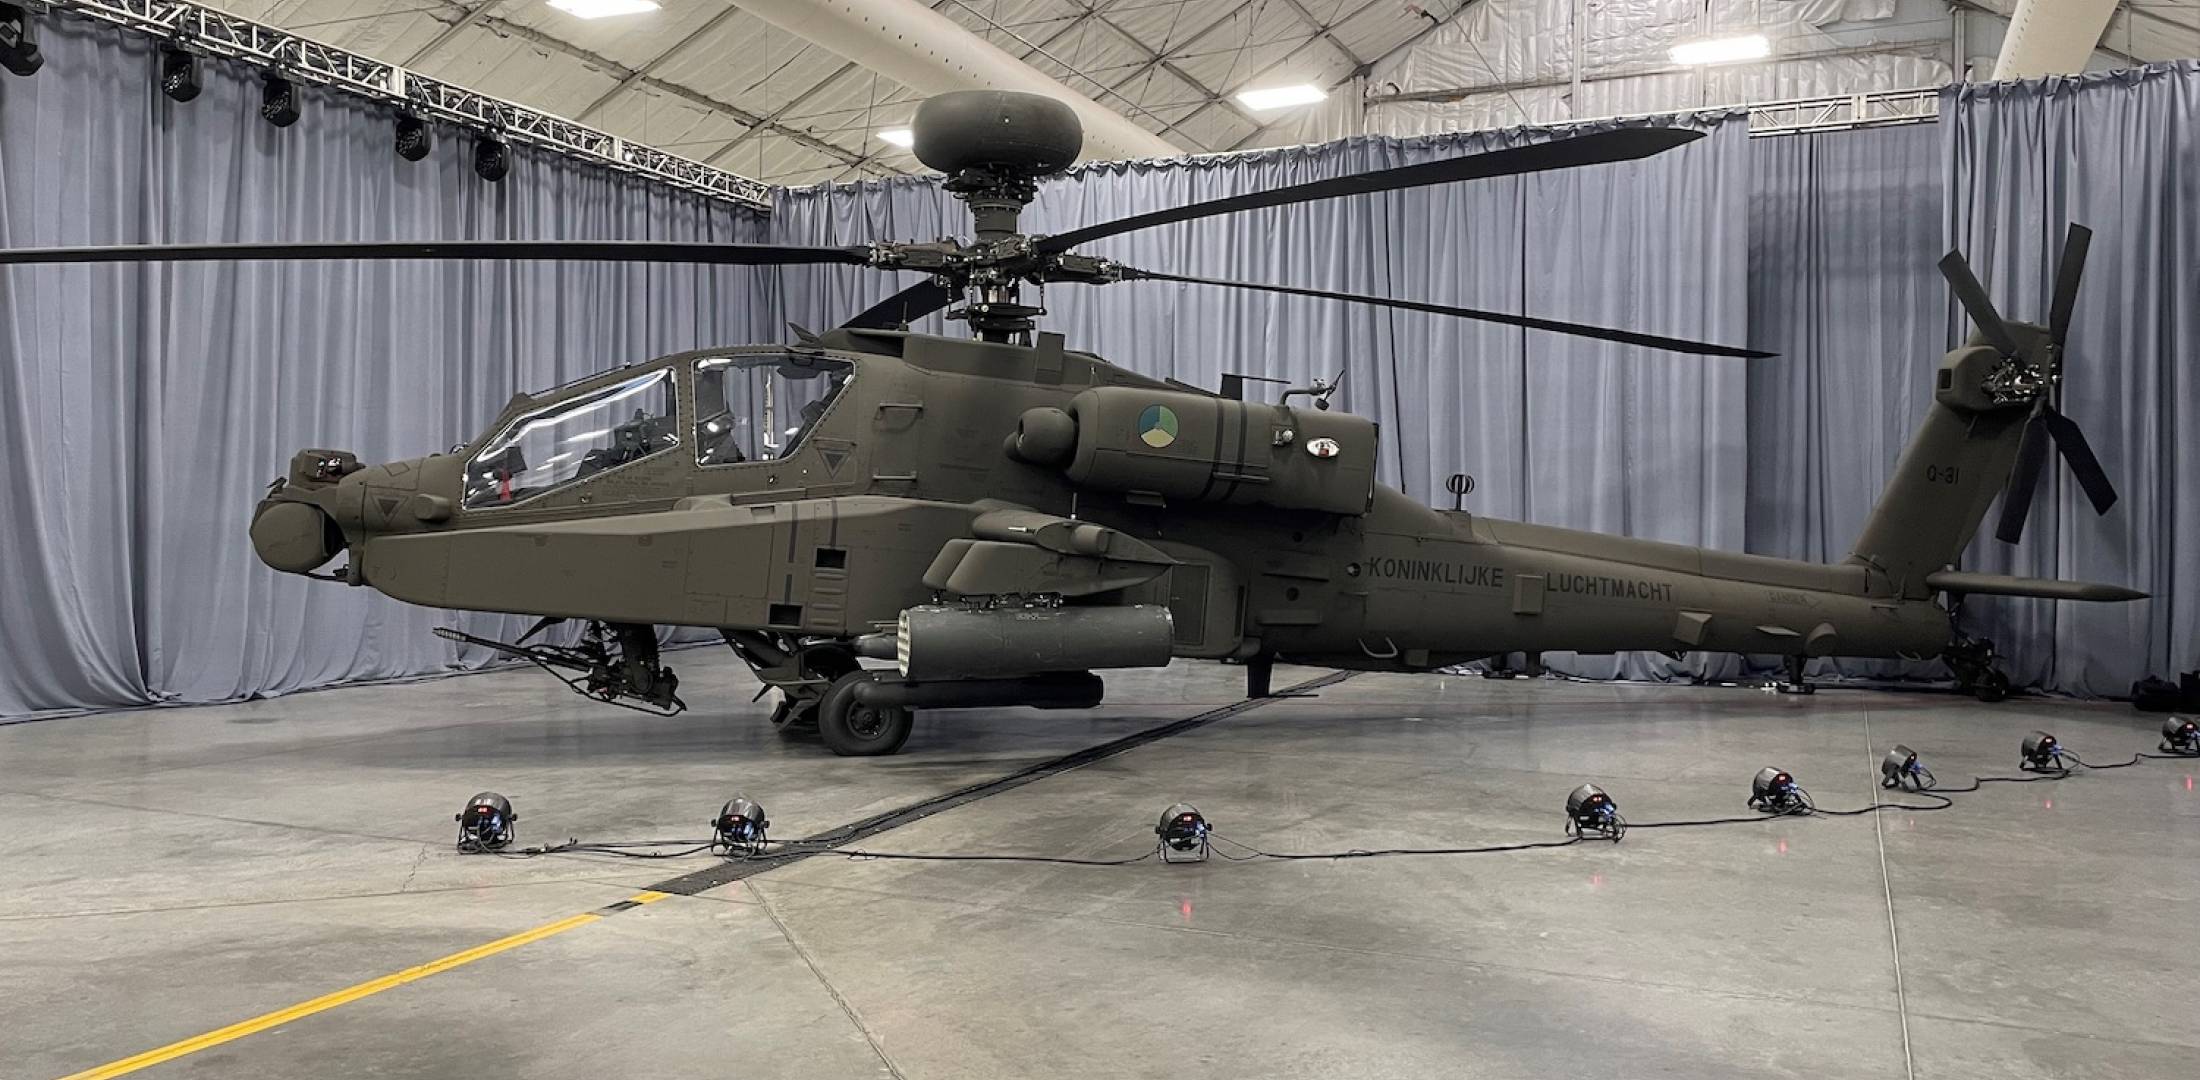 First AH-64E Apache Guardian for the Netherlands | Defense News: Aviation International News